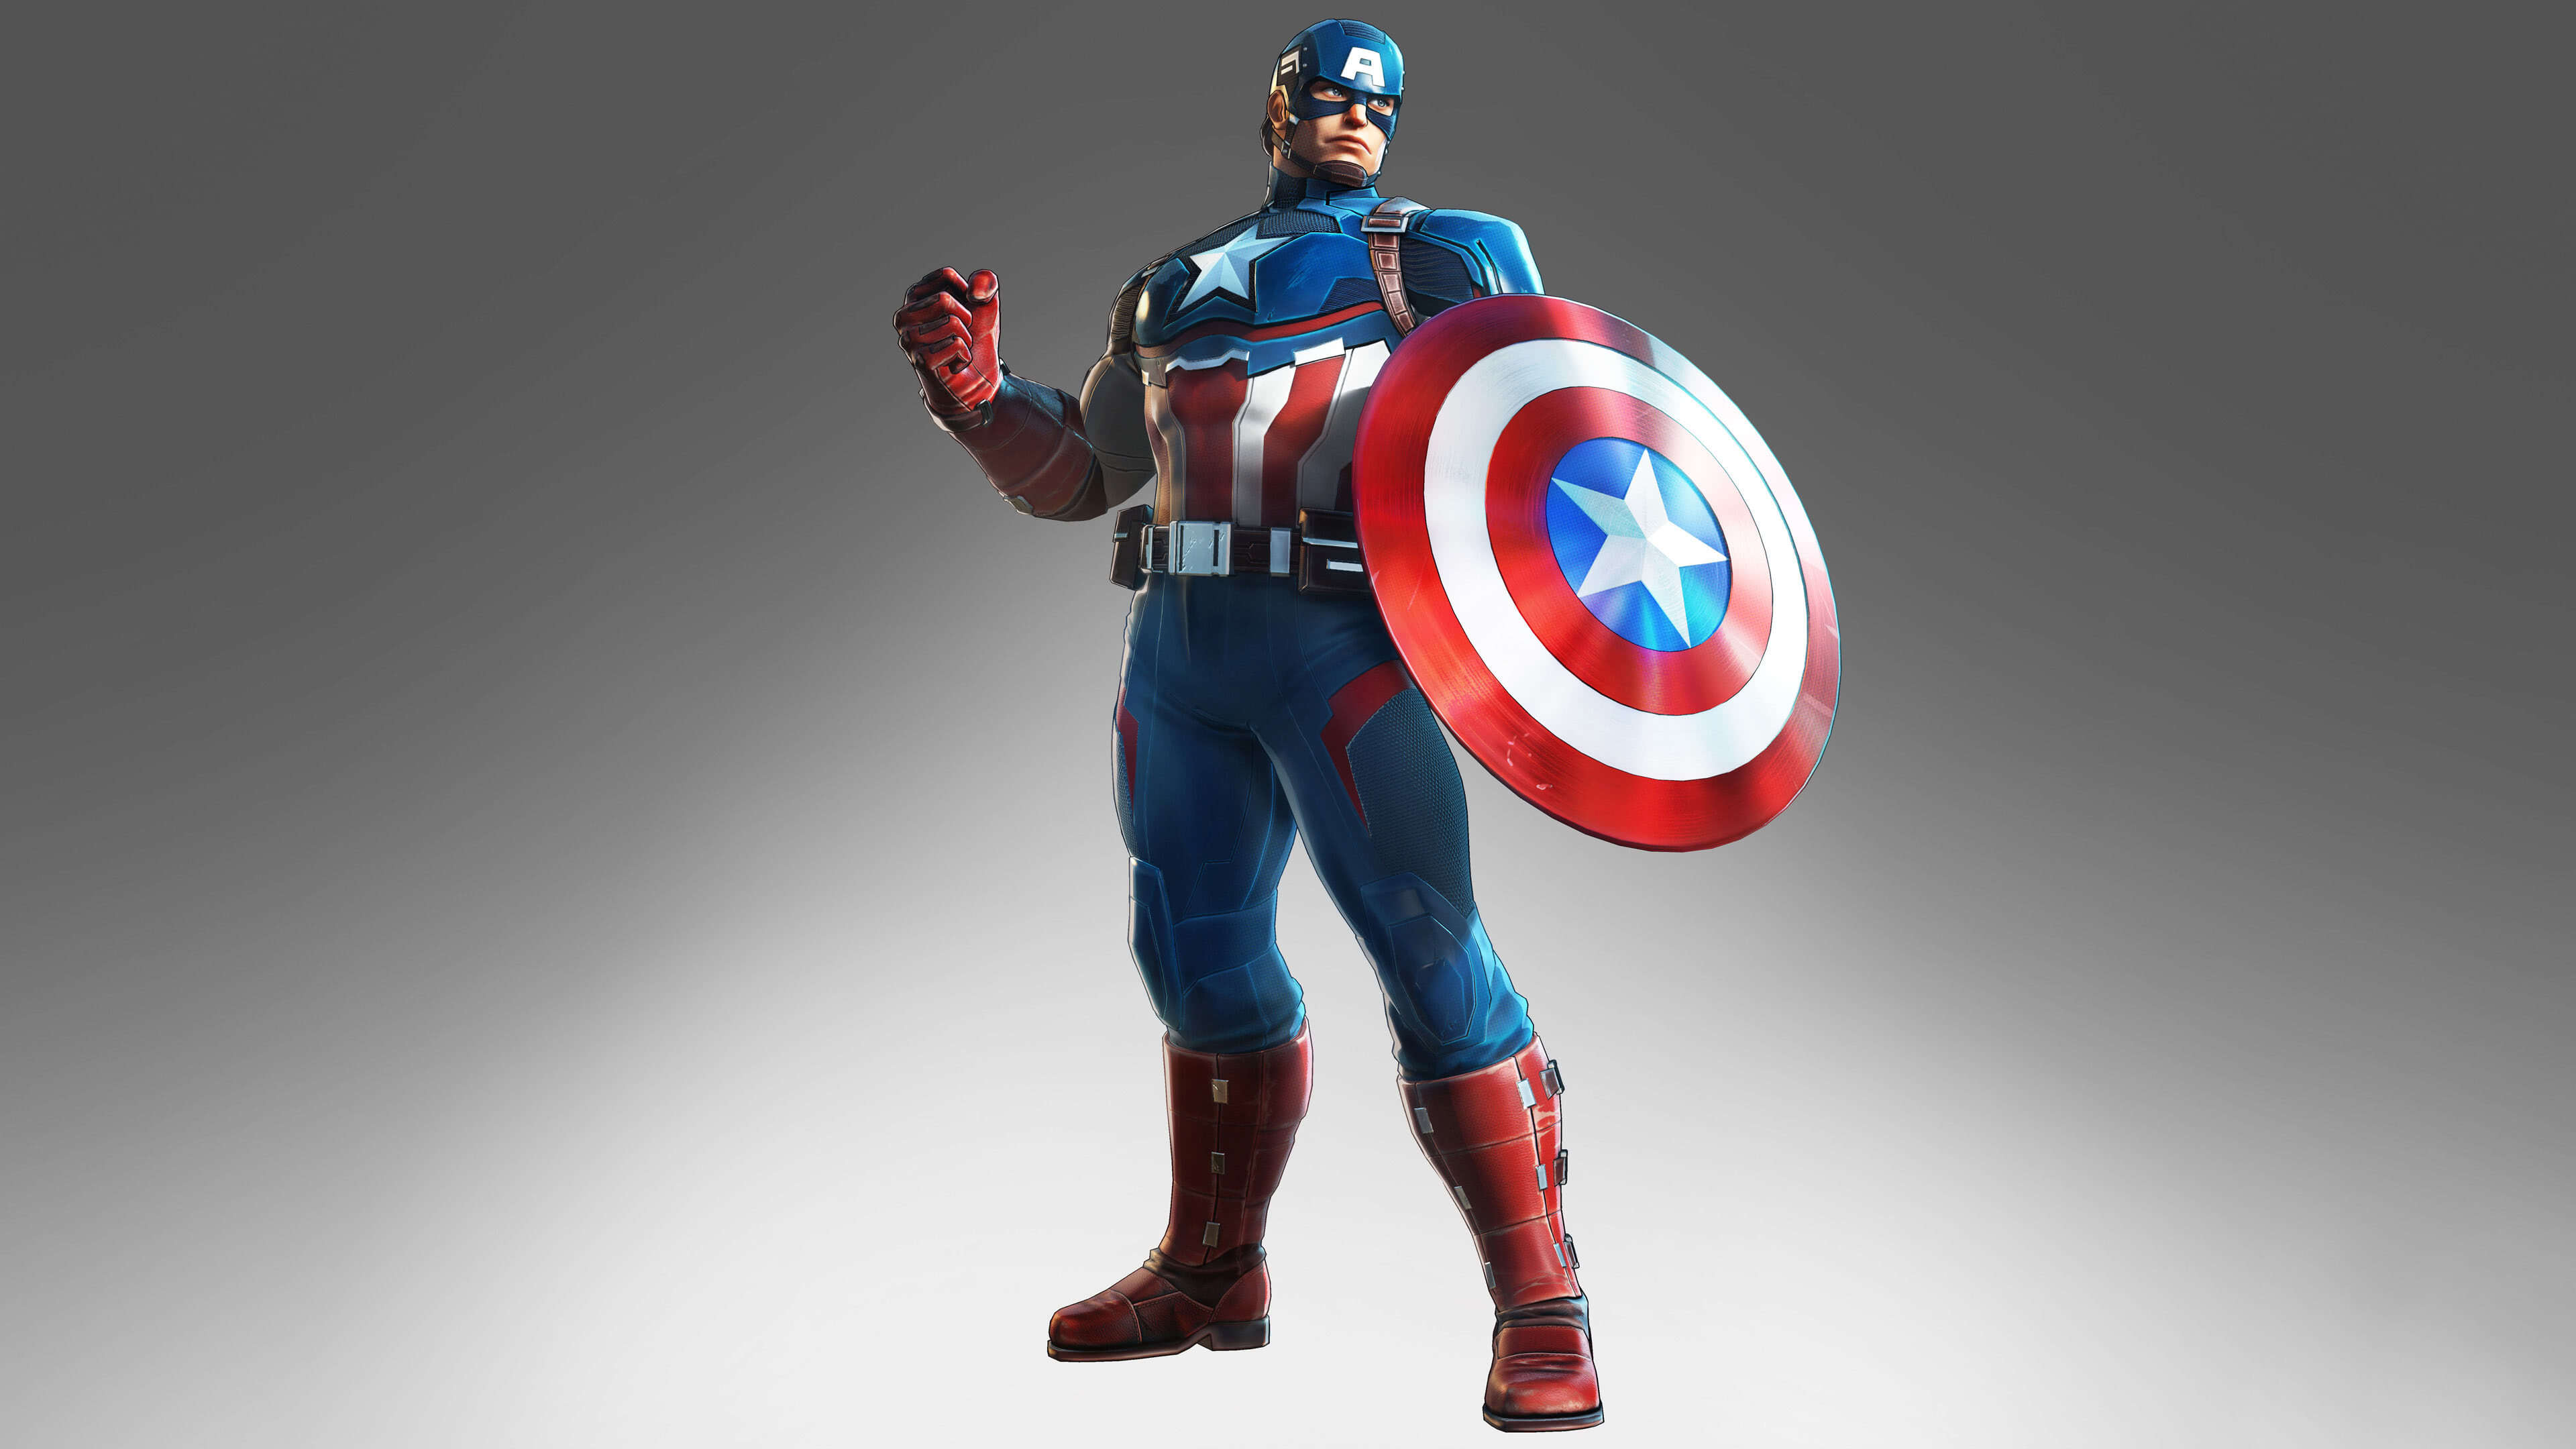 marvel ultimate alliance 3 captain america uhd 4k wallpaper